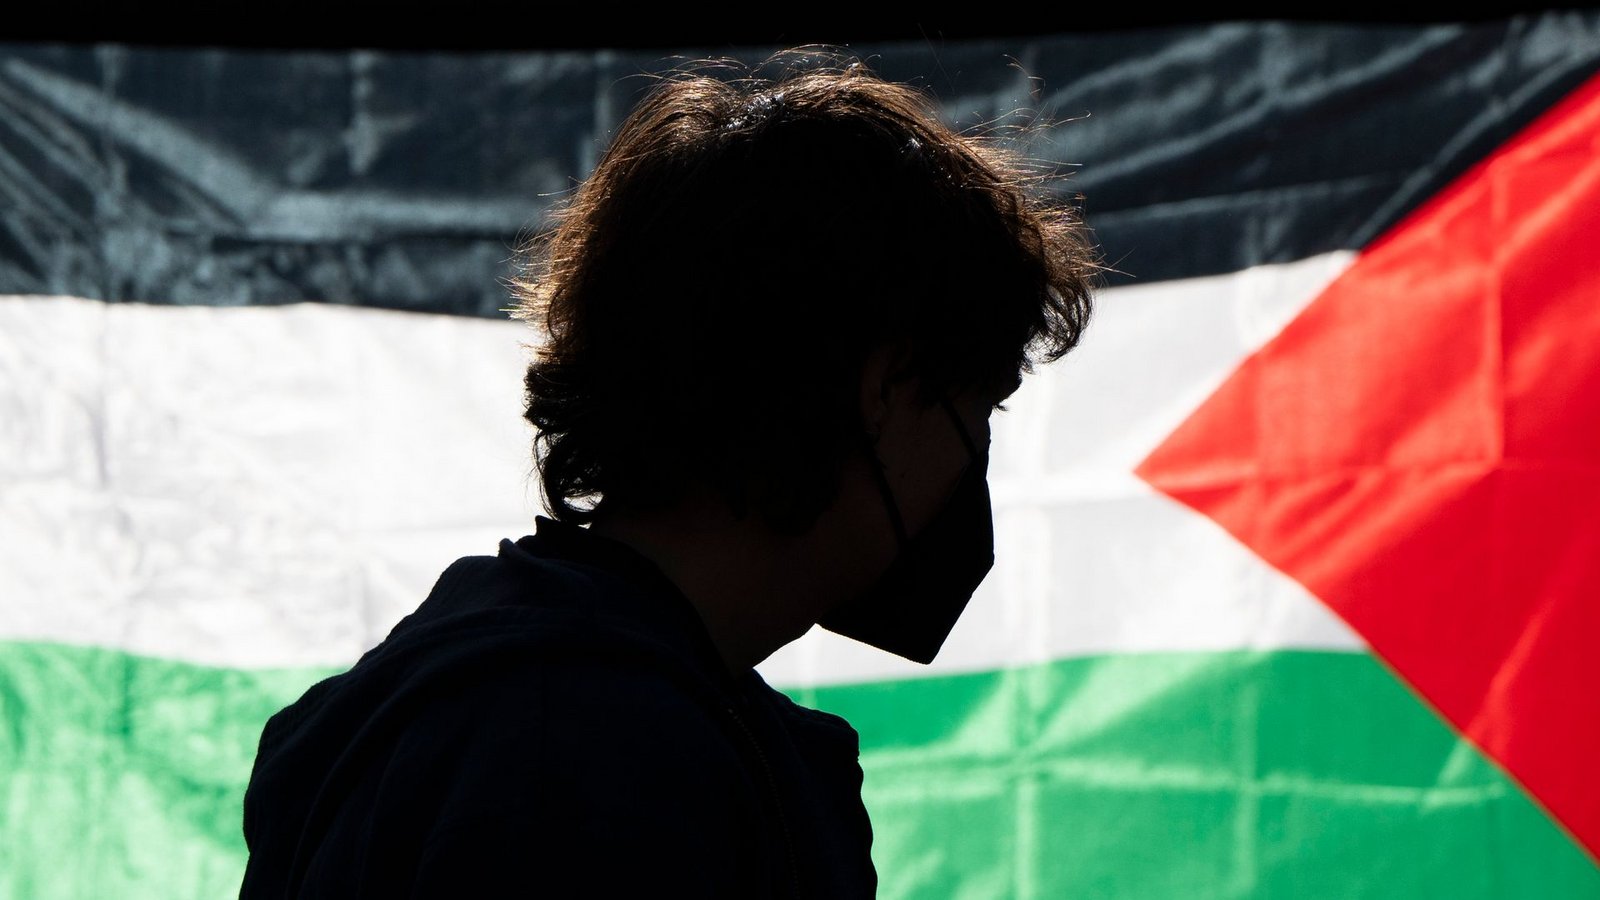 Die Demonstrierenden kritisieren das Vorgehen Israels im Gaza-Krieg und fordern Solidarität mit den Palästinensern.Foto: Jenny Kane/AP/dpa